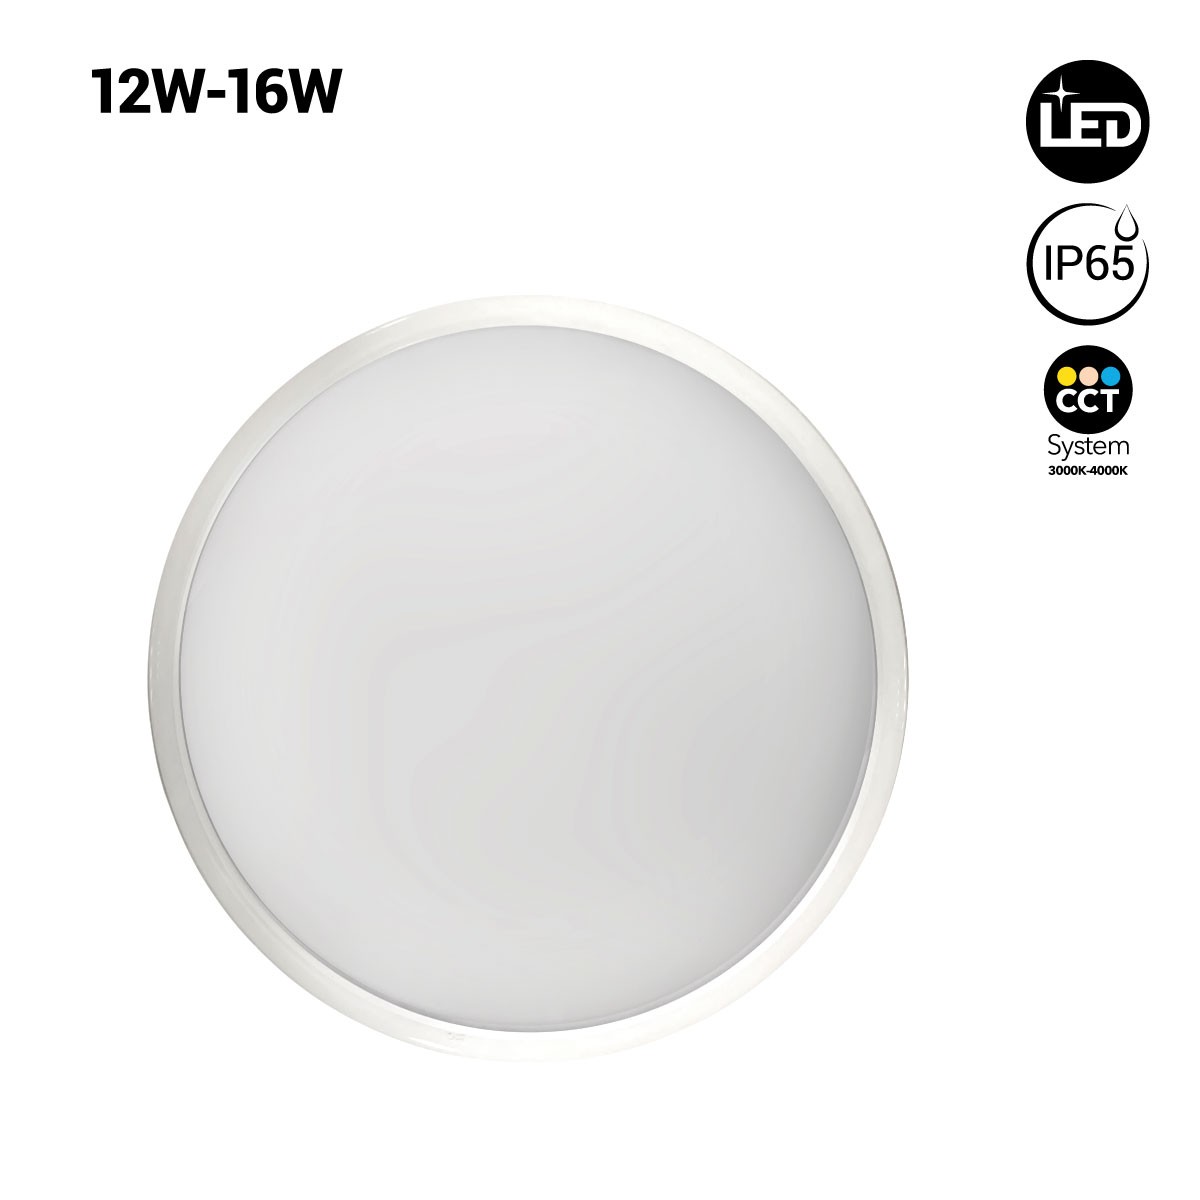 Plafon de teto circular LED 12W-16W IP65 CCT Ø30cm 12W-16W IP65 CCT Ø30cm